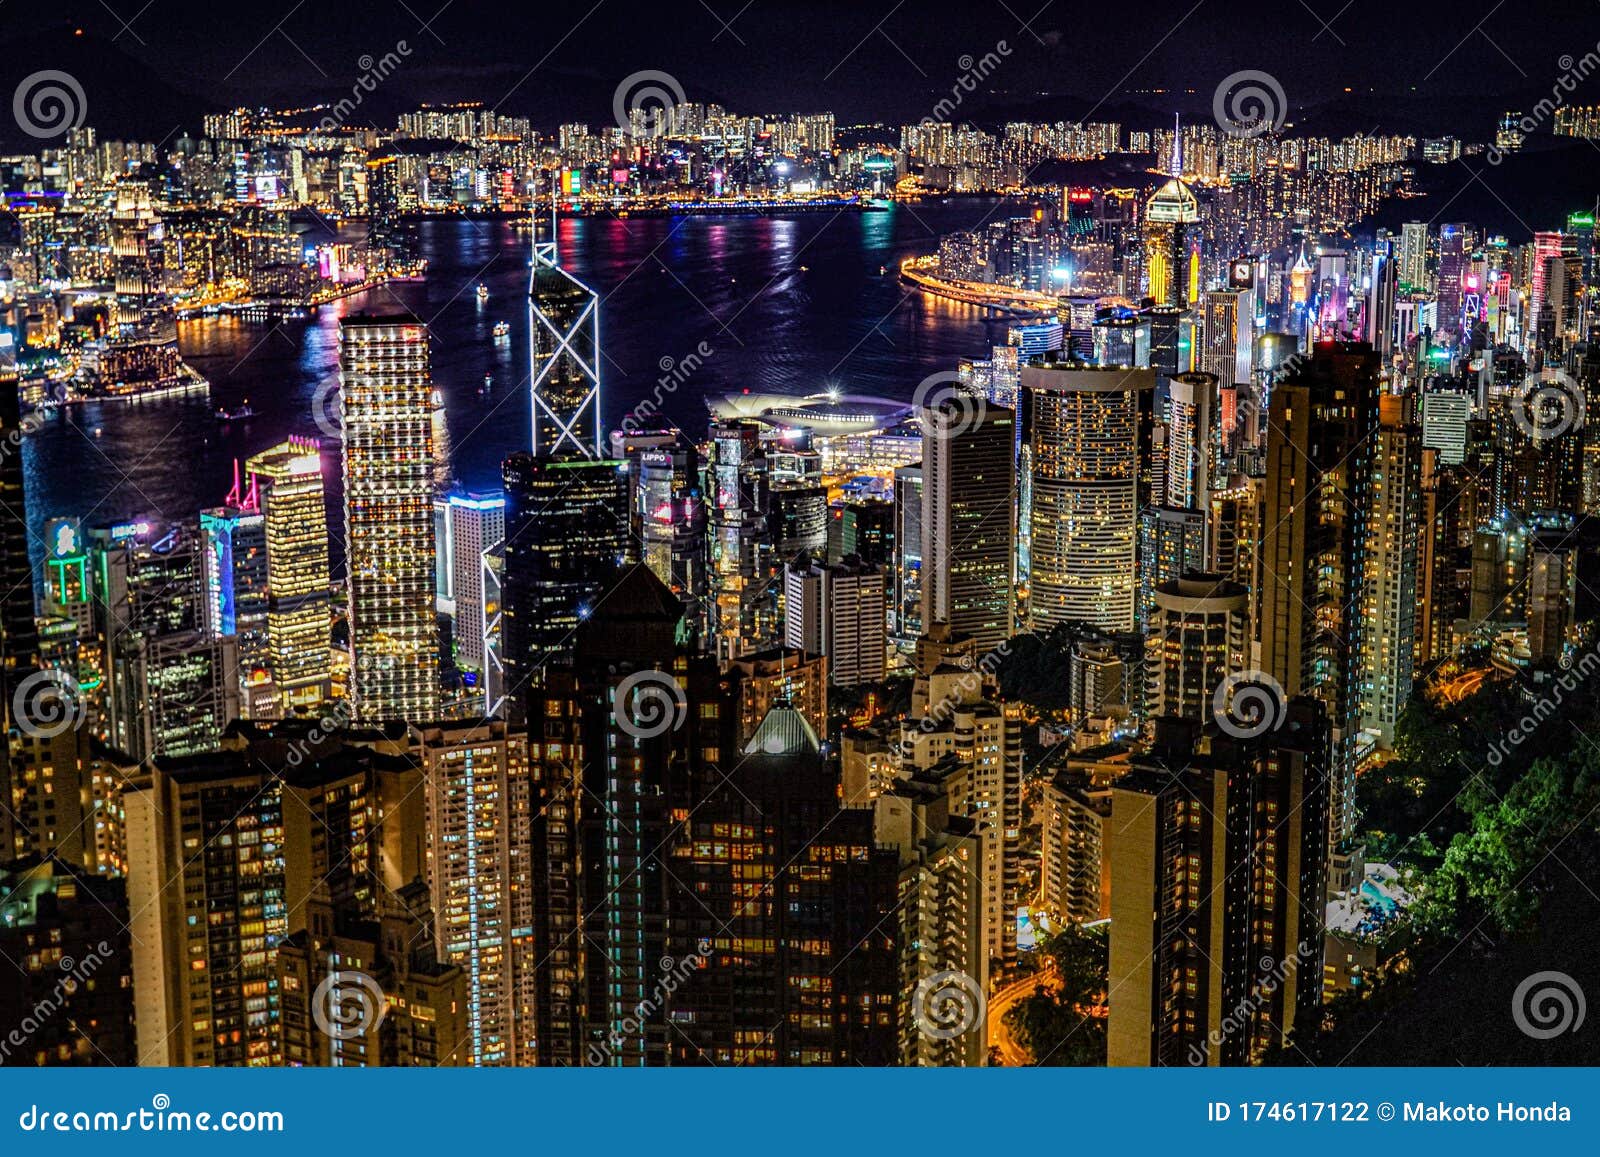 从维多利亚峰看香港夜景图库摄影片 图片包括有街道 财务 商业 晚上 横向 区域 特殊